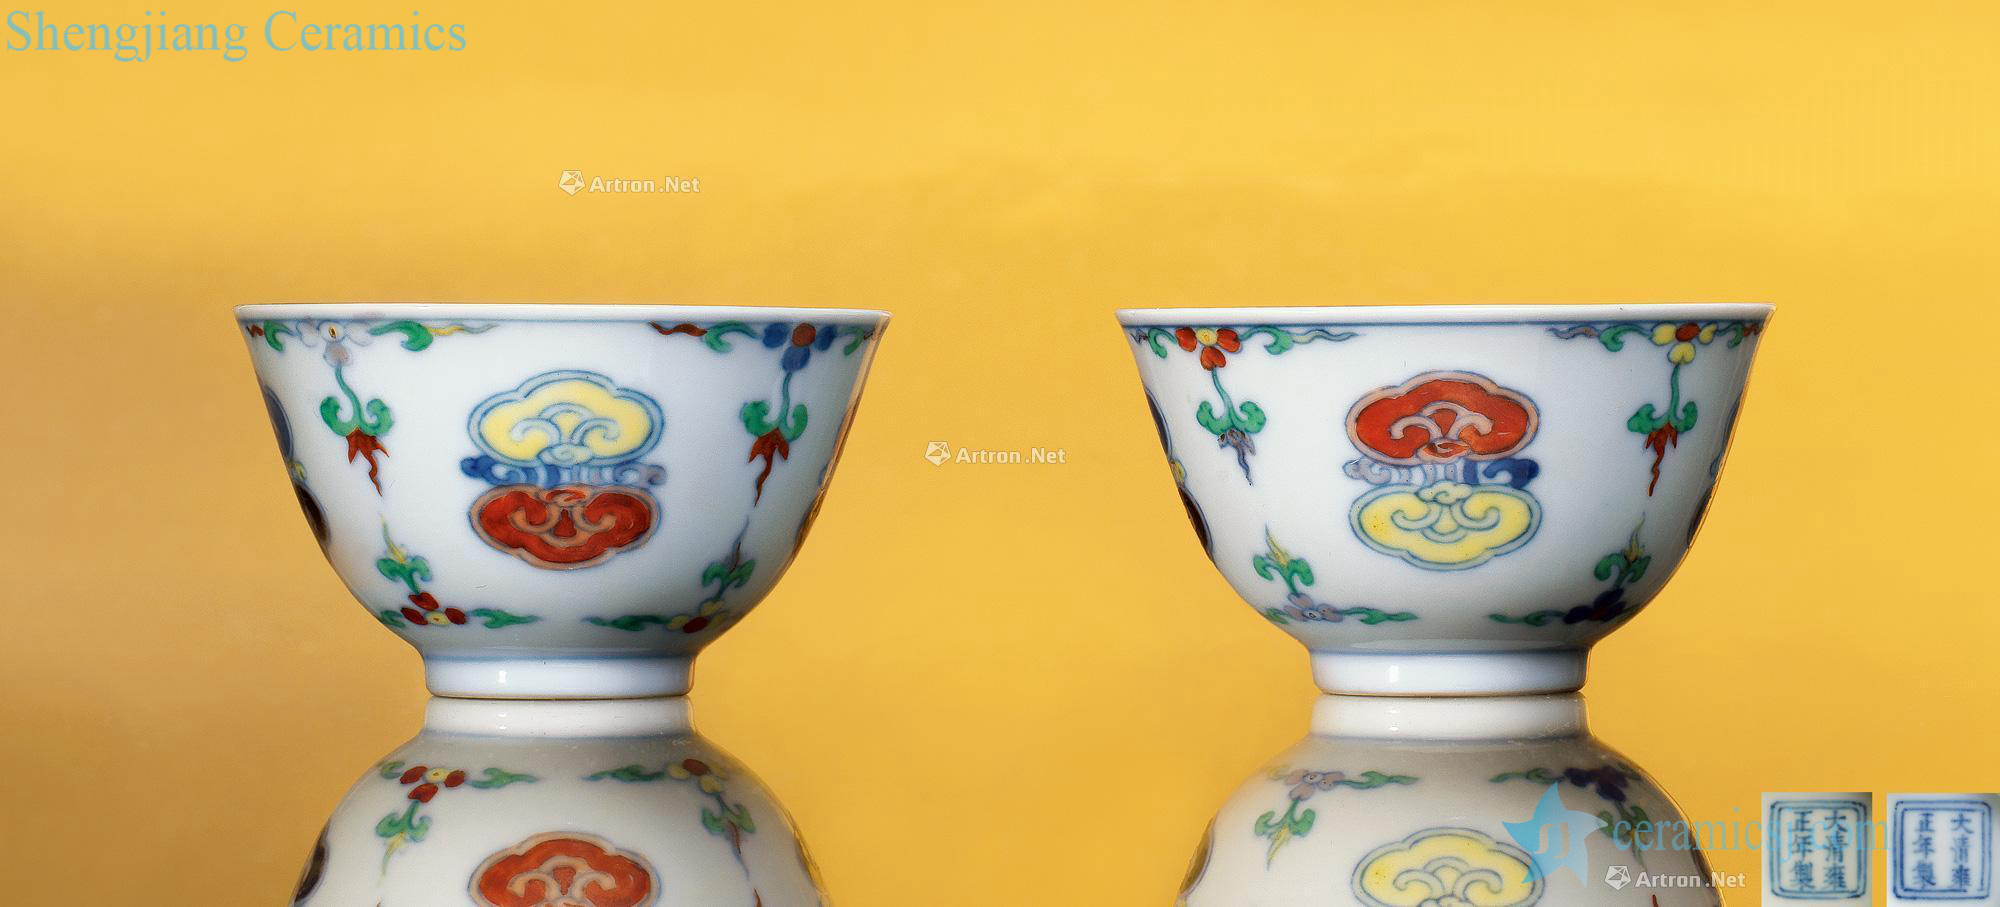 Qing yongzheng bucket color ganoderma lucidum grain cup (a)